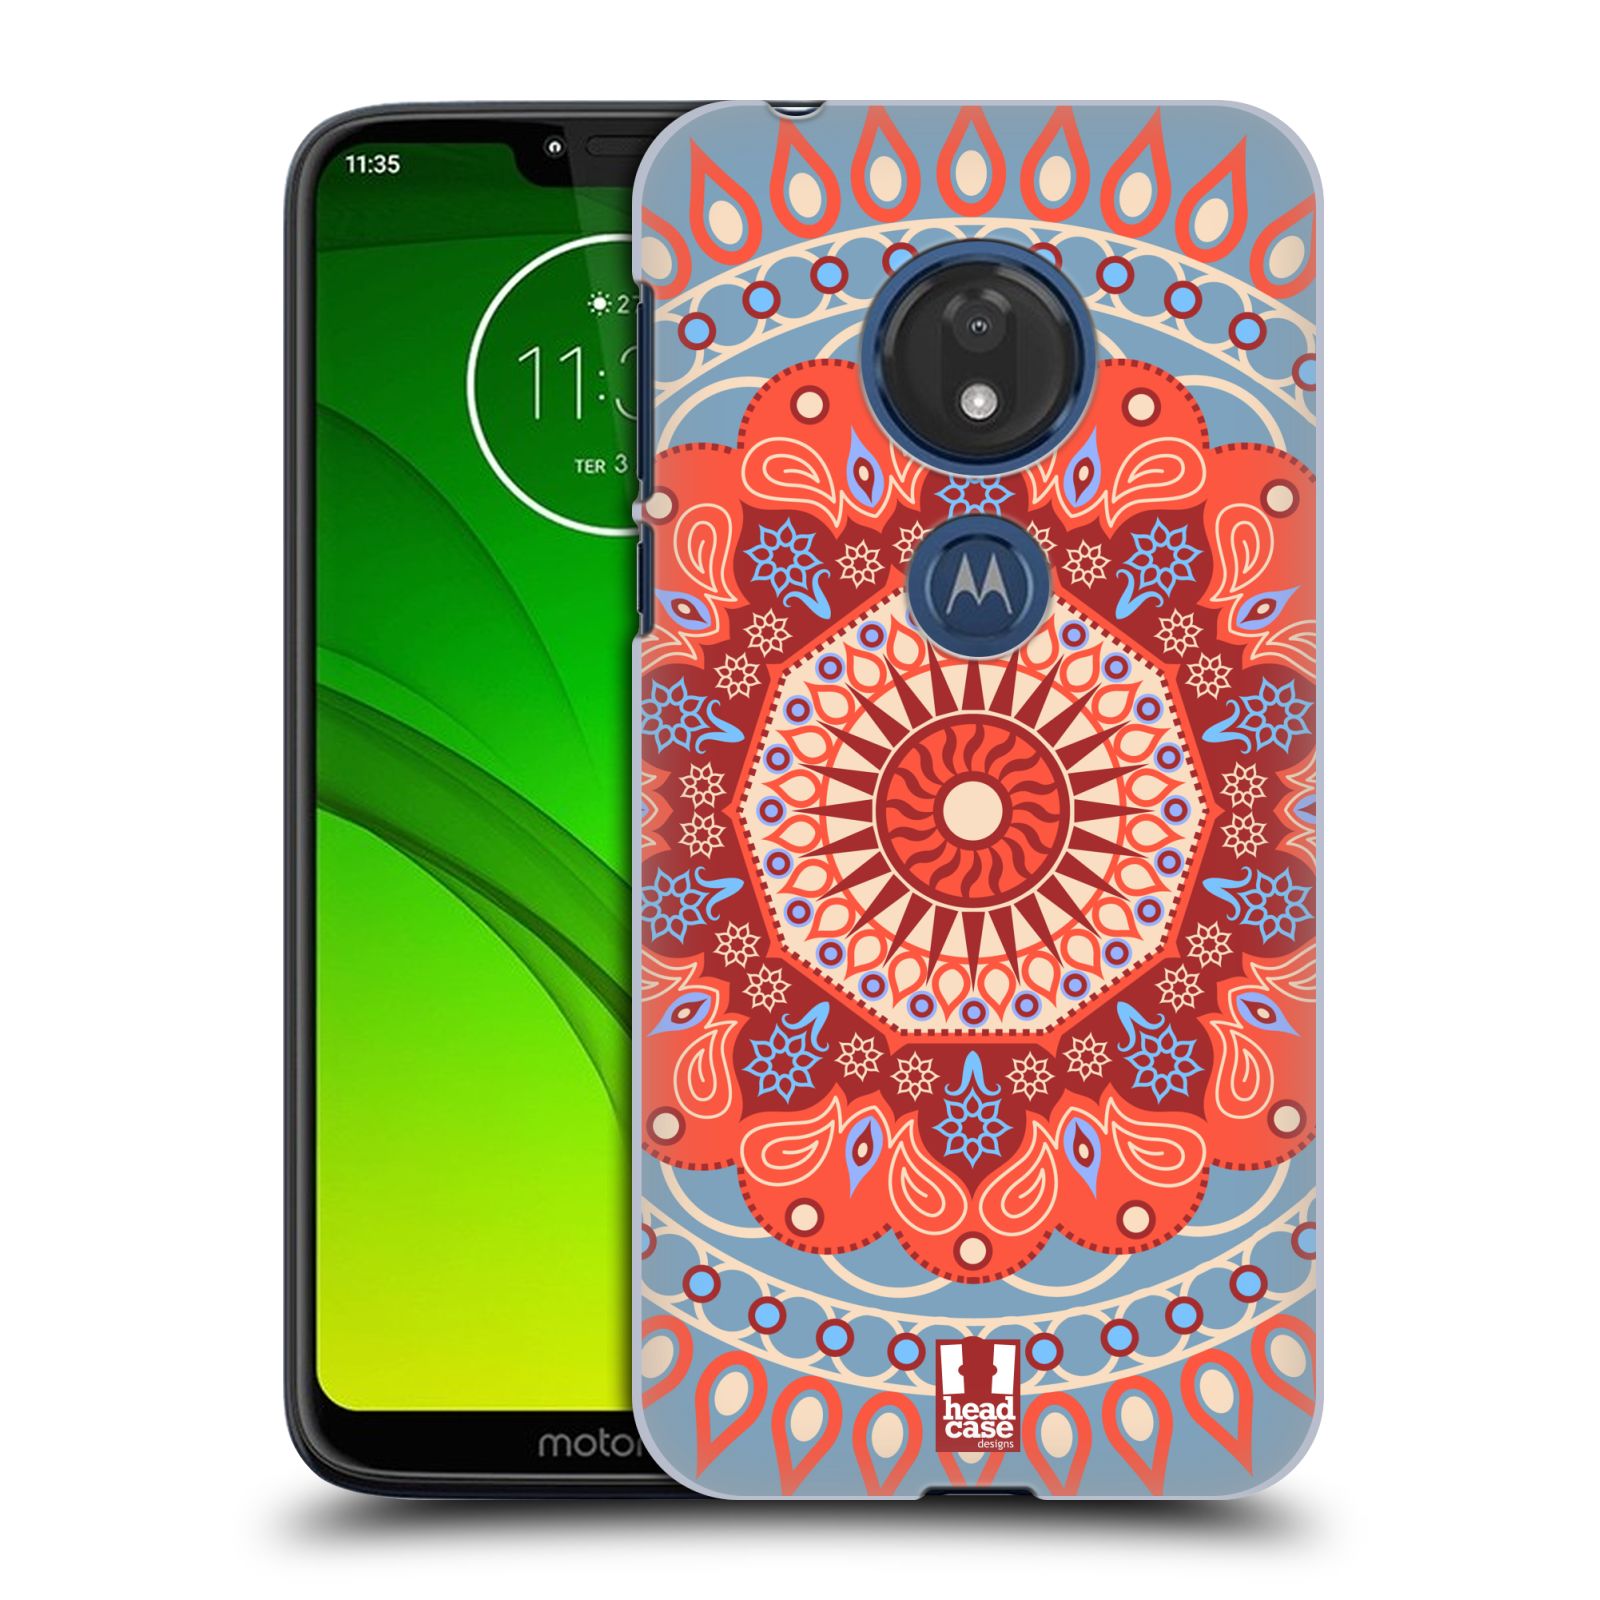 Pouzdro na mobil Motorola Moto G7 Play vzor Indie Mandala slunce barevný motiv ČERVENÁ A MODRÁ